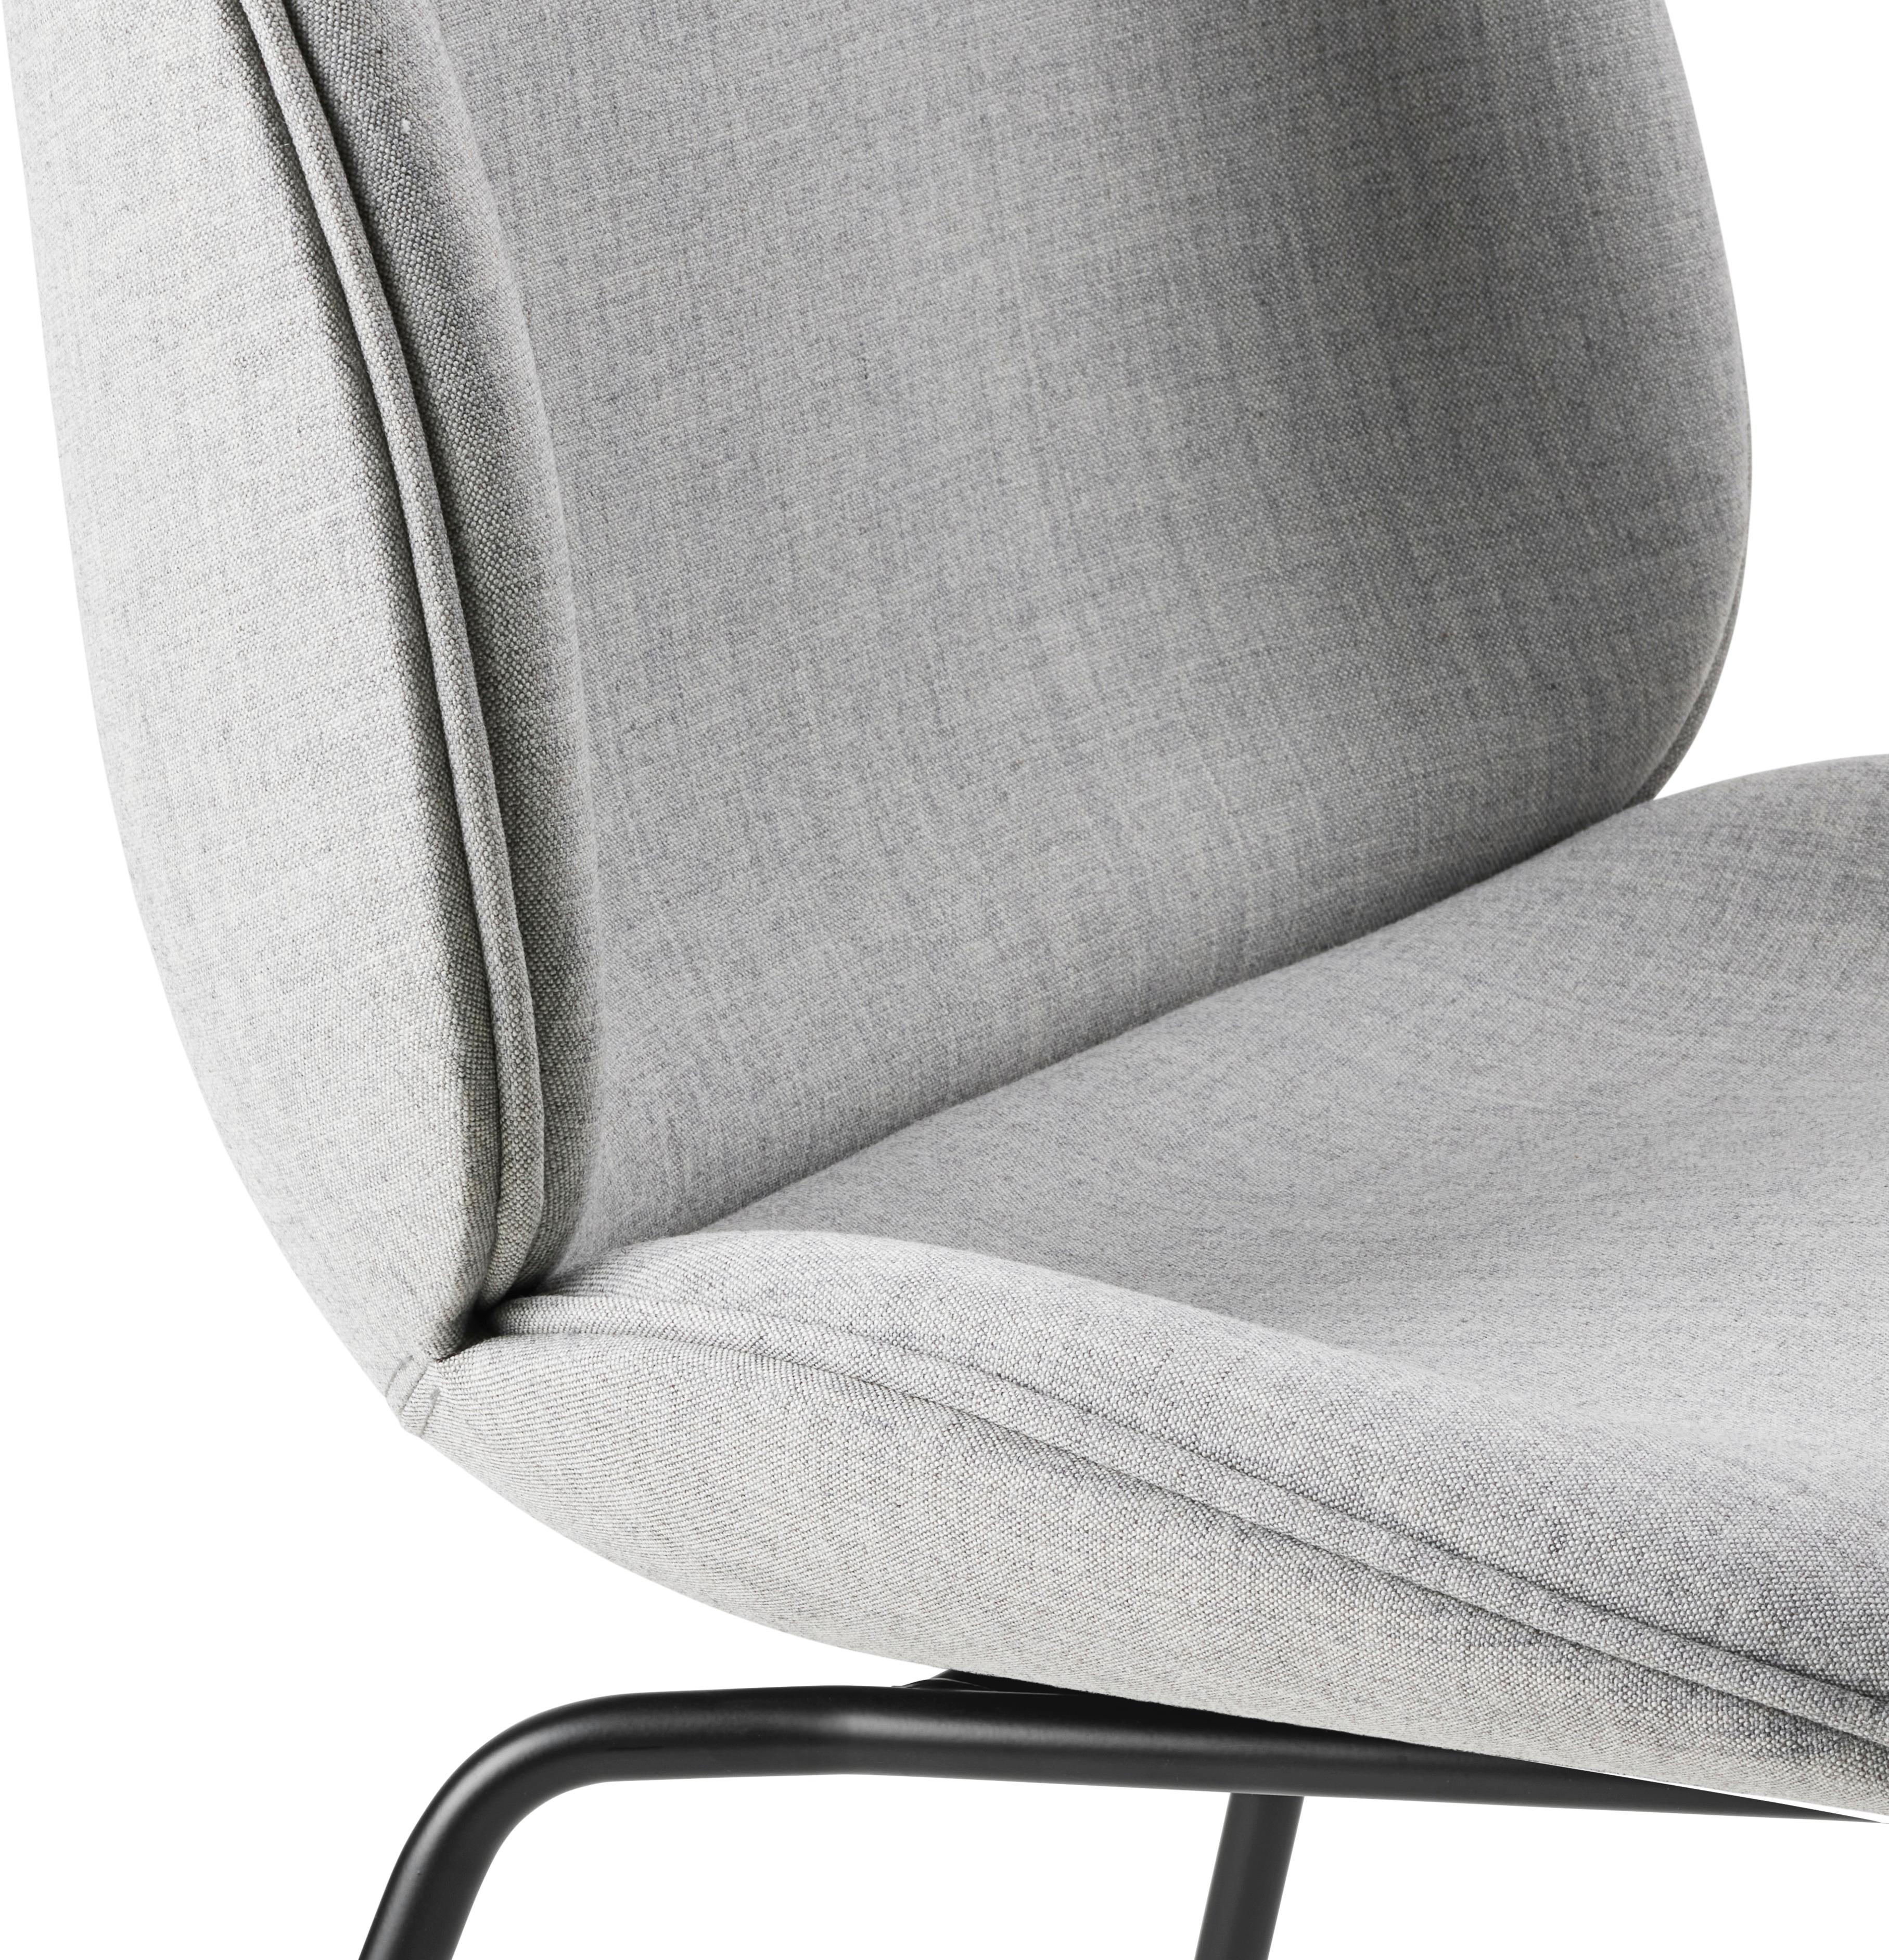 Organic Modern Beetle Dining Chair-Fully Upholstered-Remix 3/123 / Black Matt Base-GamFratesi  For Sale